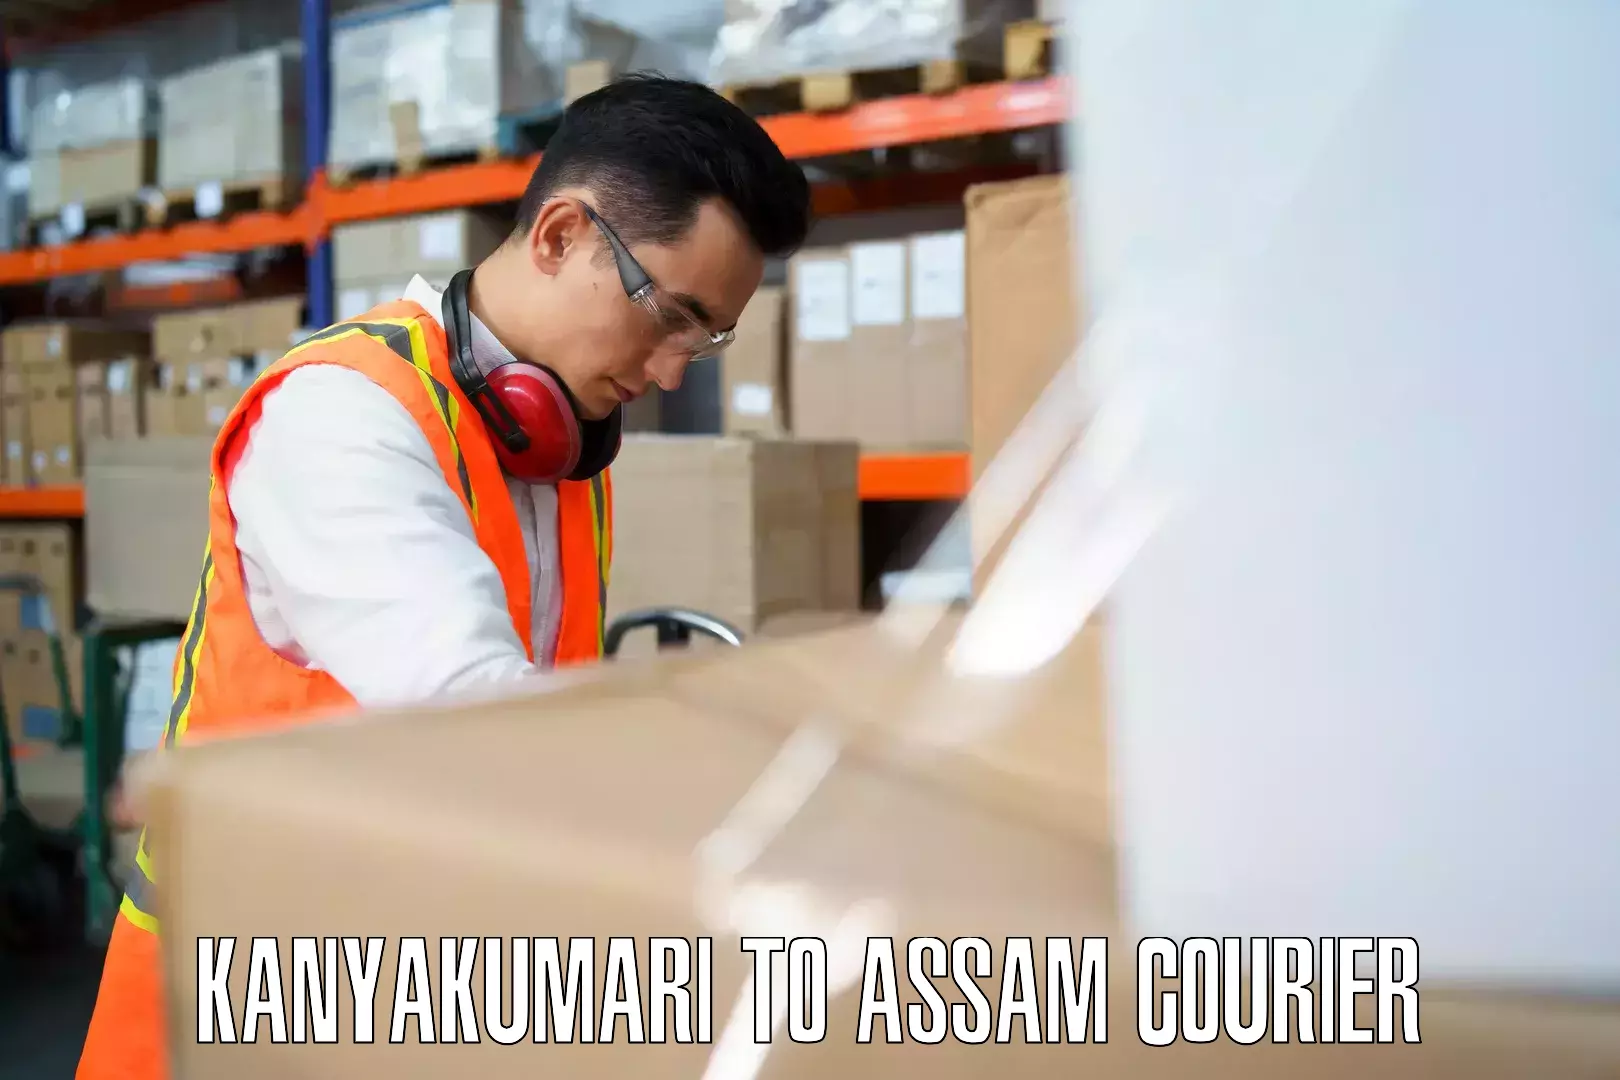 Baggage shipping quotes Kanyakumari to Assam